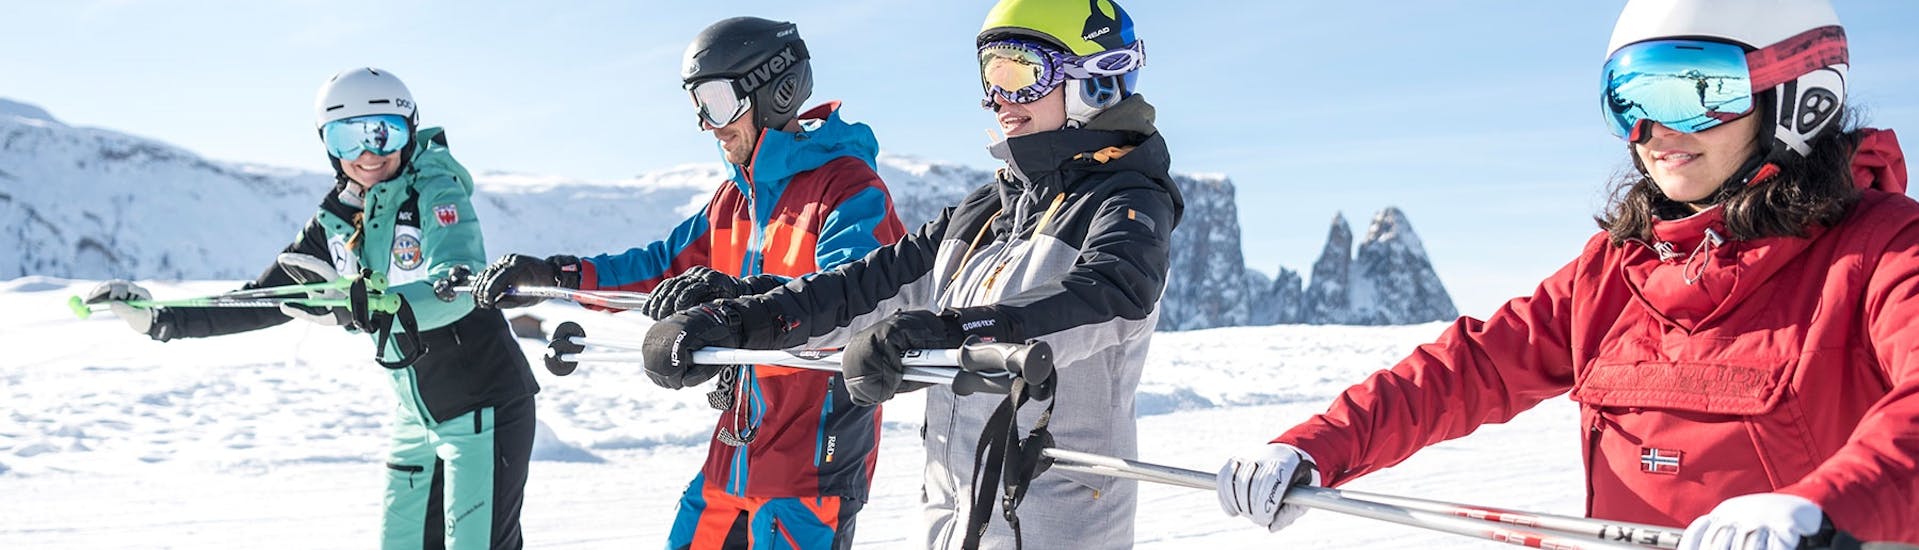 Cours de ski Adultes dès 13 ans pour Tous niveaux.